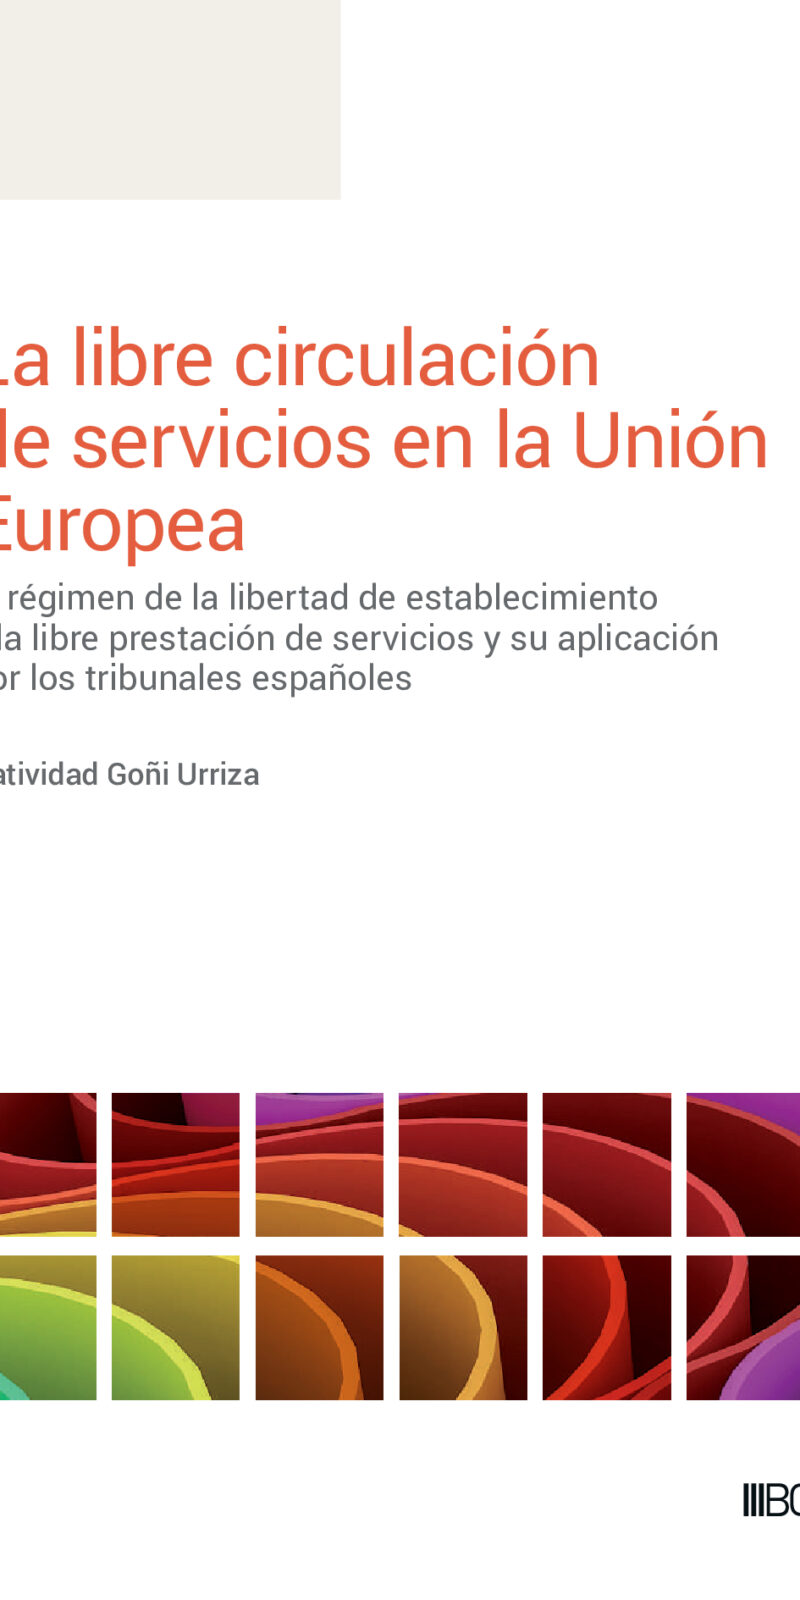 Libre circulación de servicios en la Unión Europea